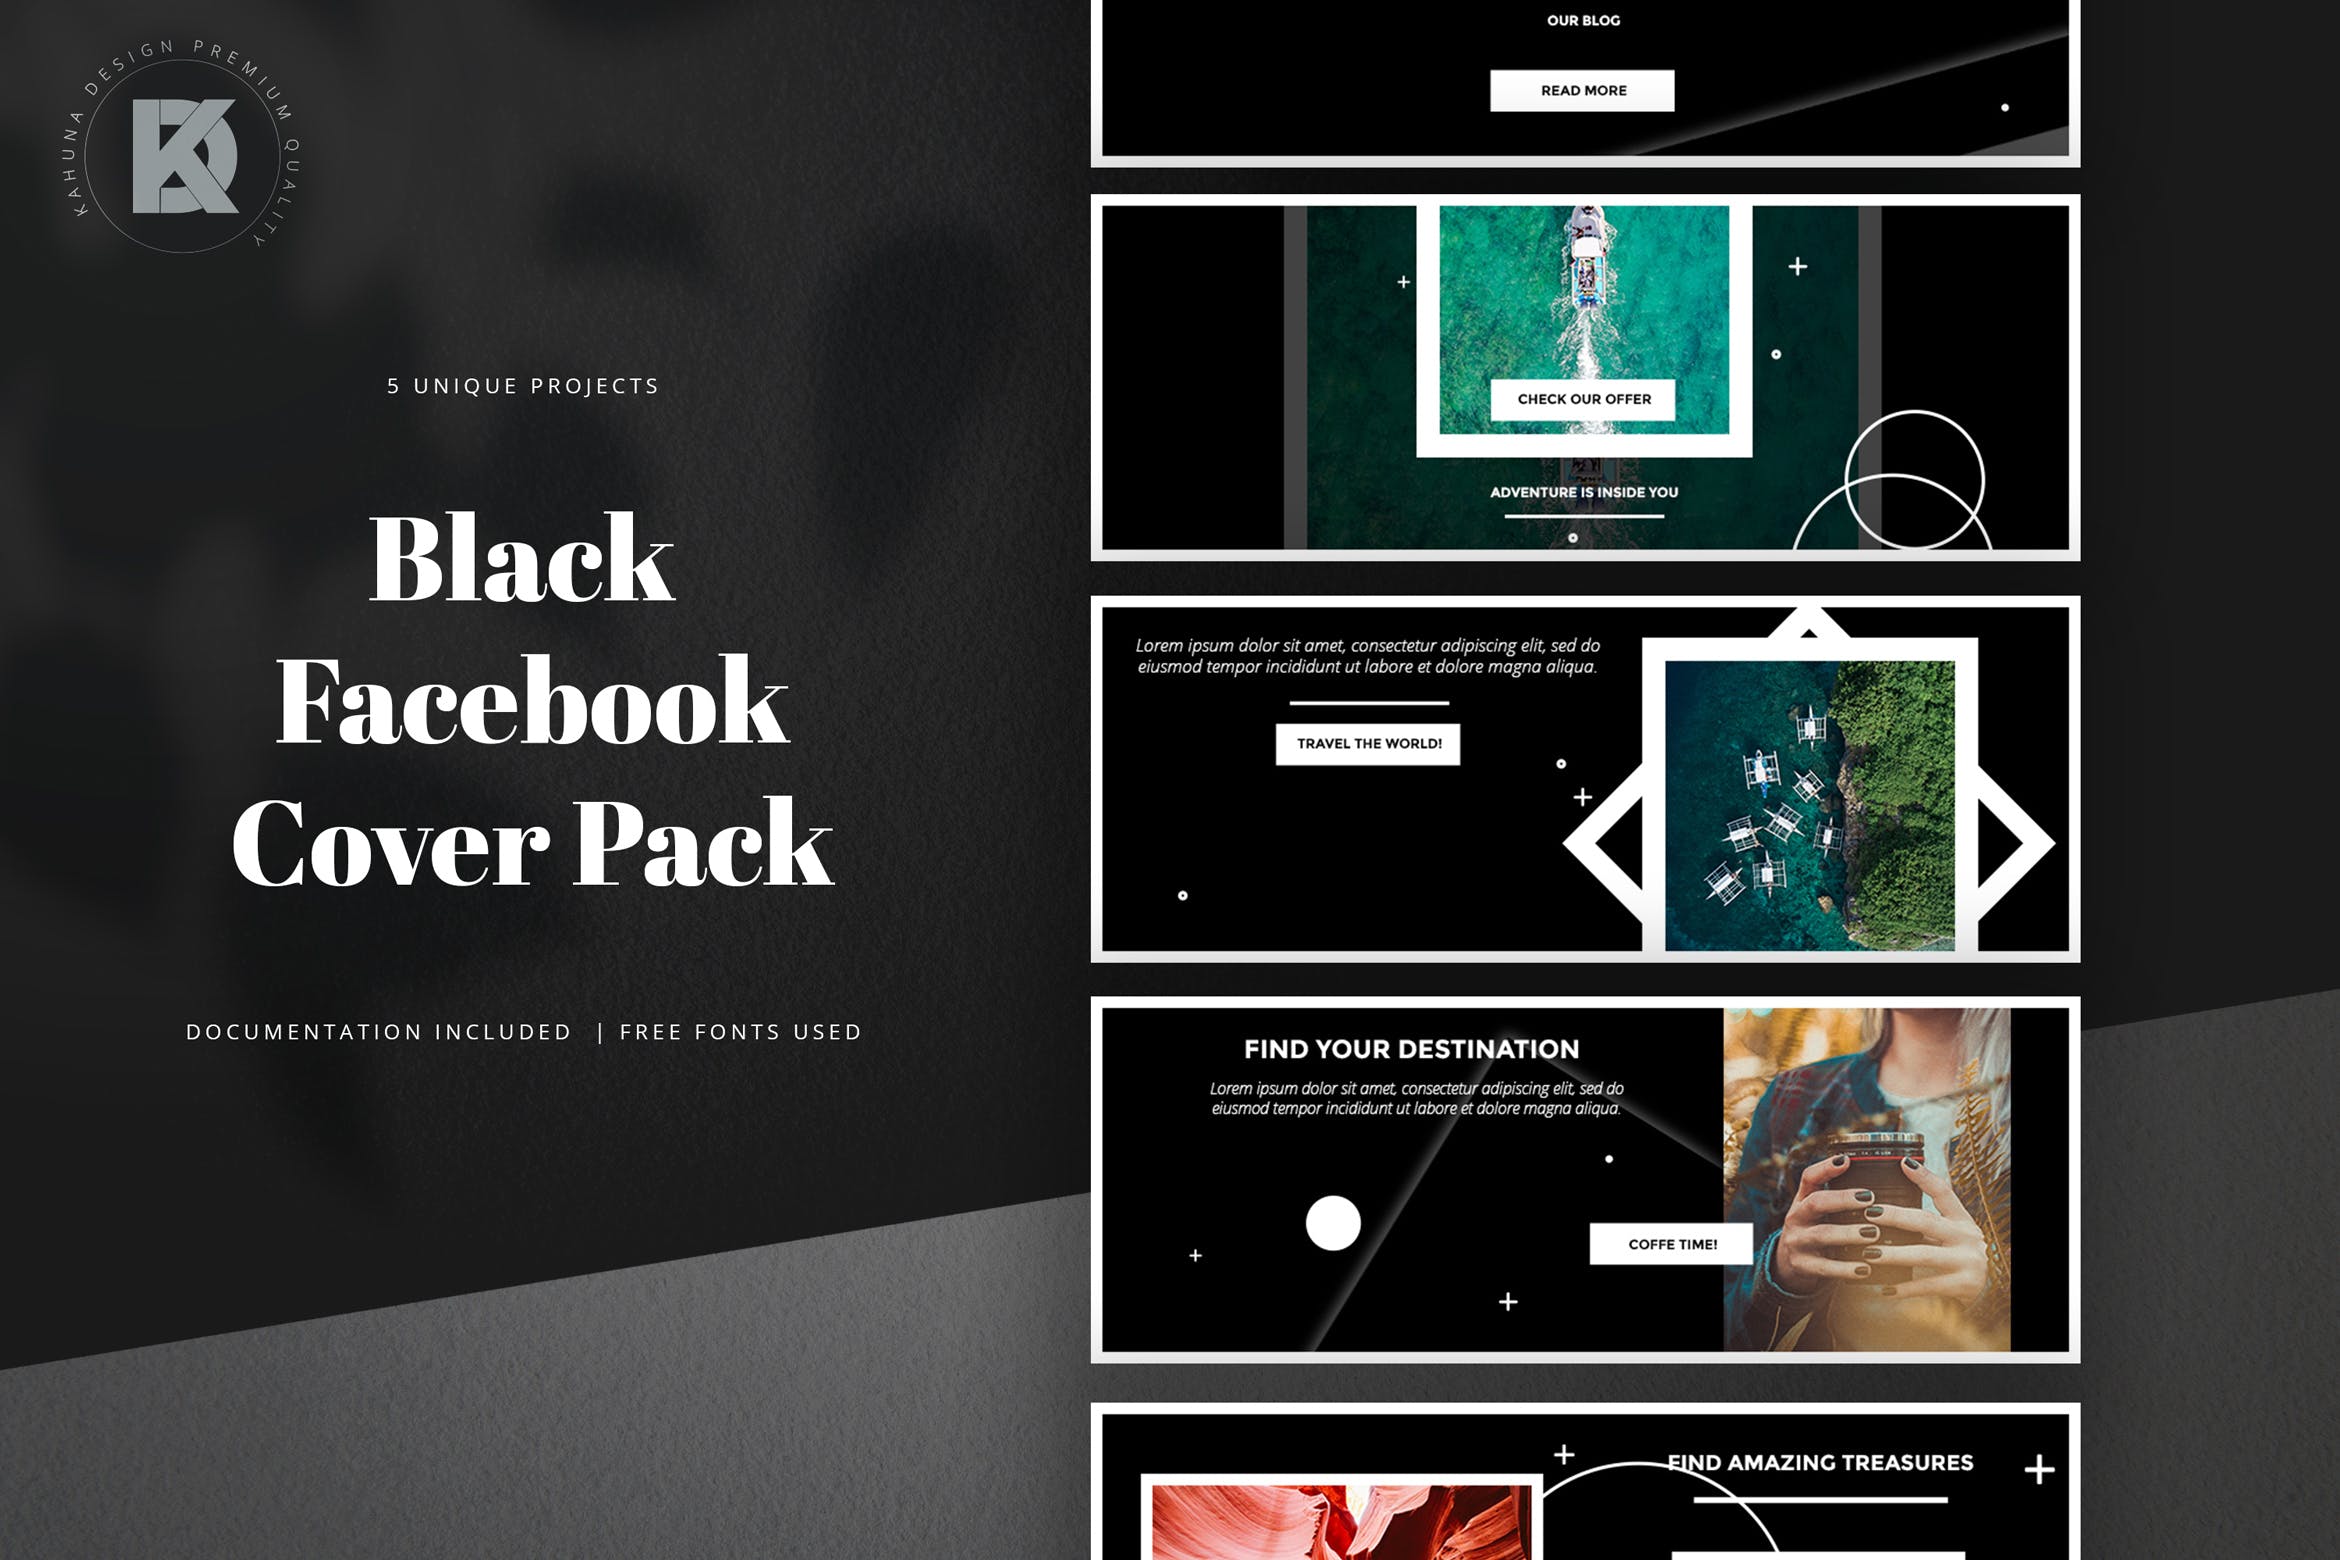 黑色背景Facebook主页封面设计模板非凡图库精选 Black Facebook Cover Pack插图